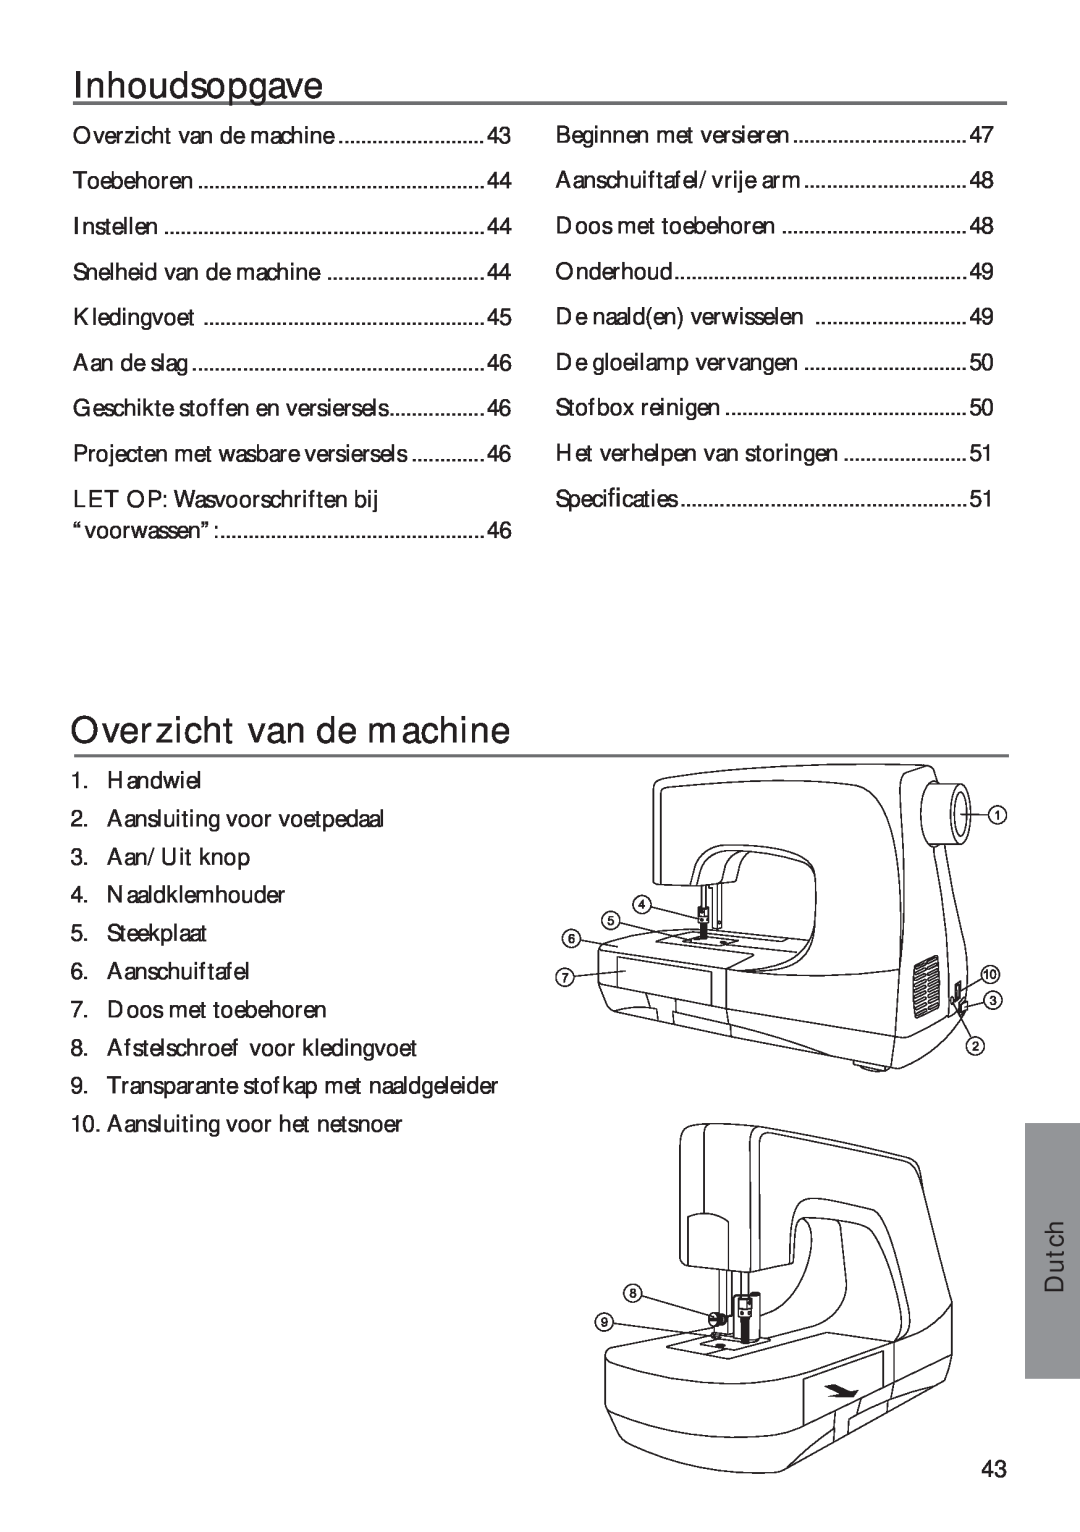 Pfaff 350P owner manual Inhoudsopgave, Overzicht van de machine, Dutch 